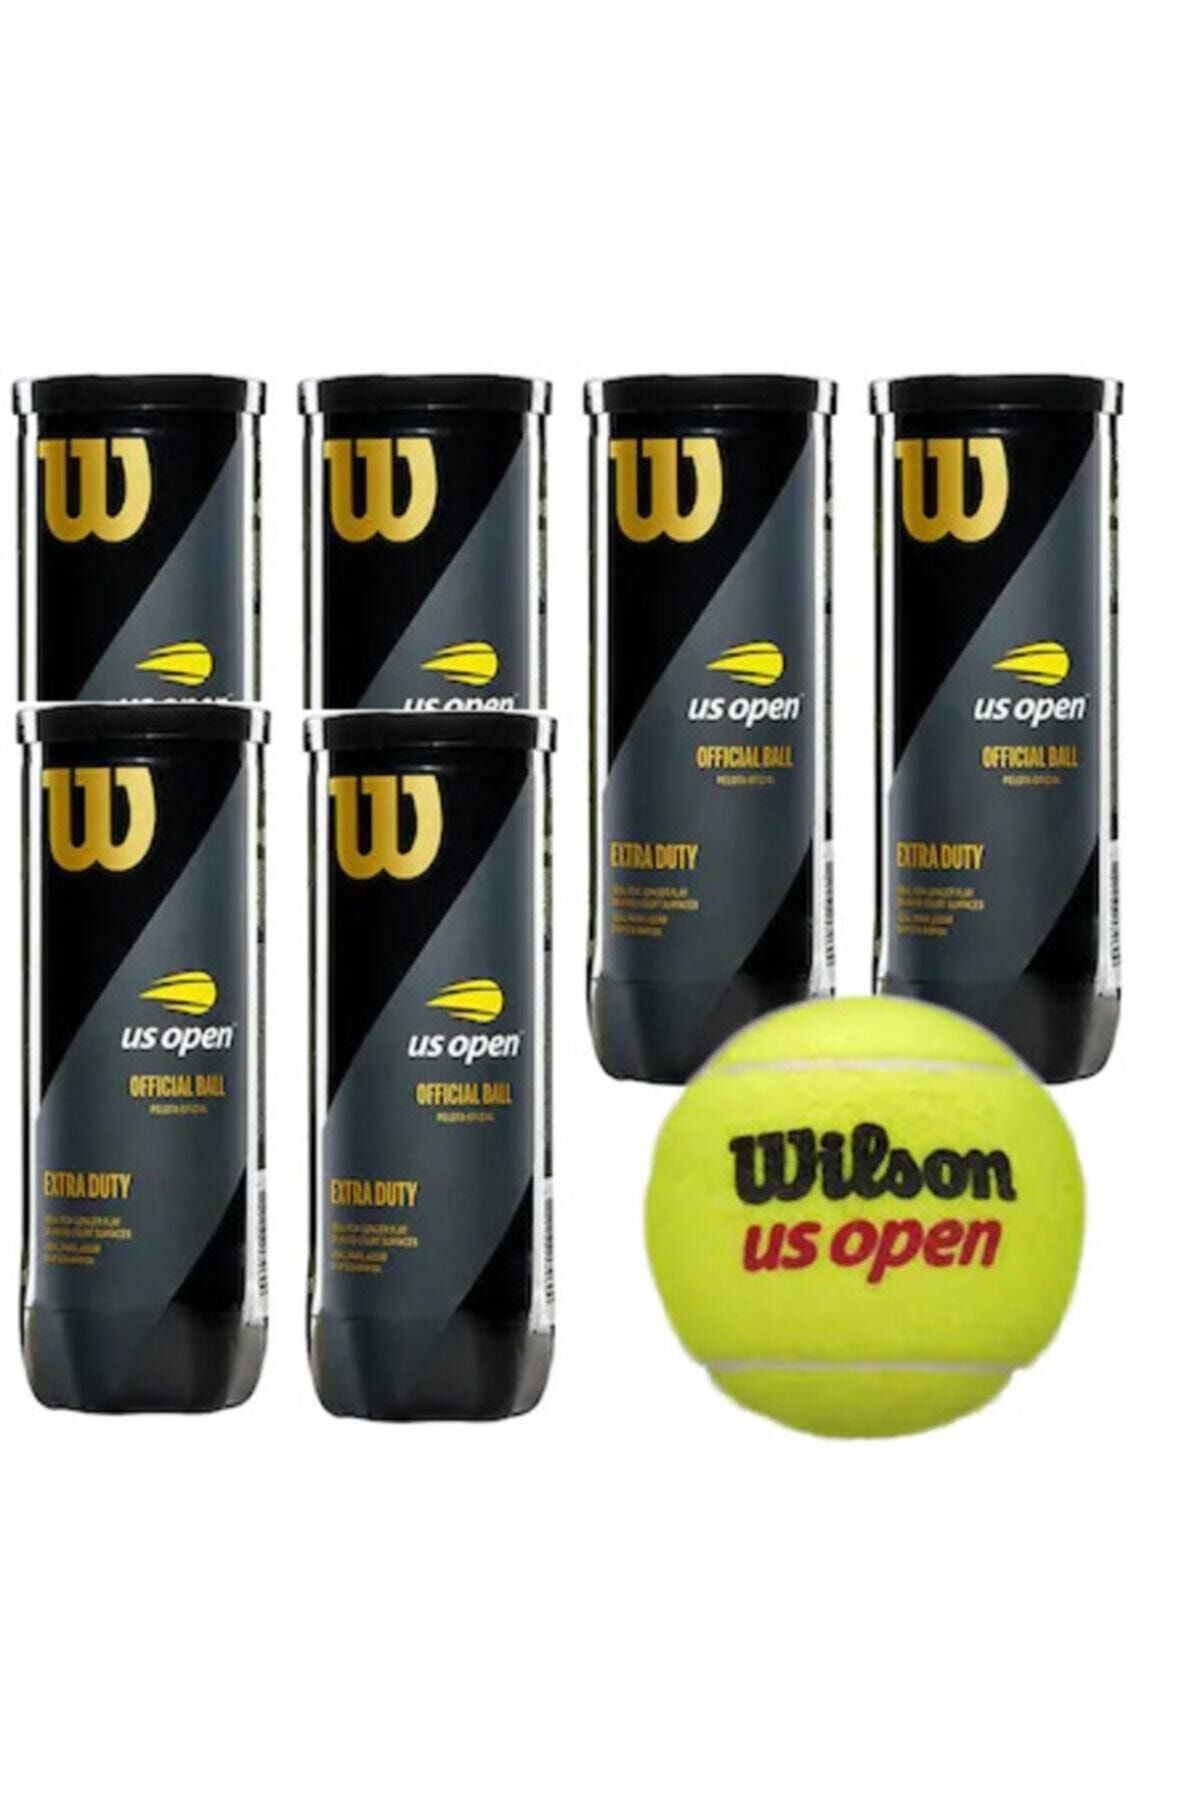 Wilson 6 Kutu Us Open Tenis Topu Vakum Ambalajda